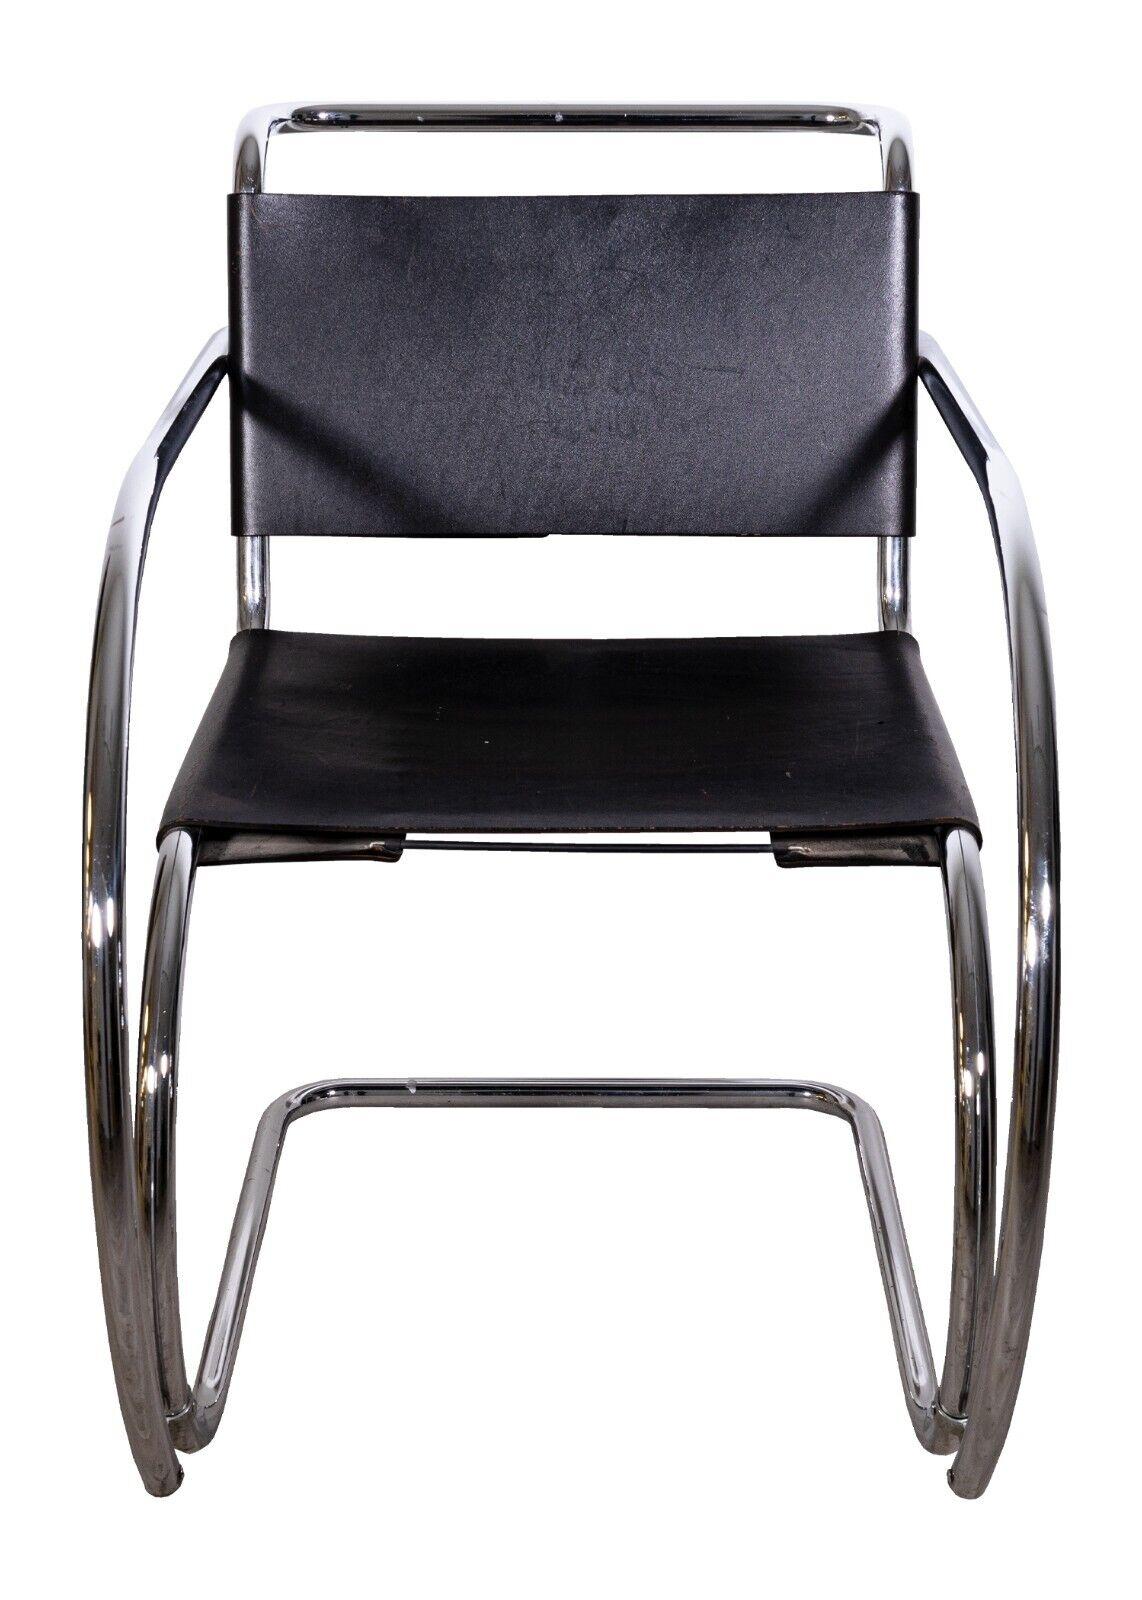 Ein Paar Mies Van Der Rohe Mr Lounge Stühle. Dies ist eine absolut wunderbare Reihe von Lounge-Sesseln. Diese Stühle haben eine verchromte Metallkonstruktion mit Sitzen und Rückenlehnen aus schwarzem Leder. Diese Stühle haben eine fantastische